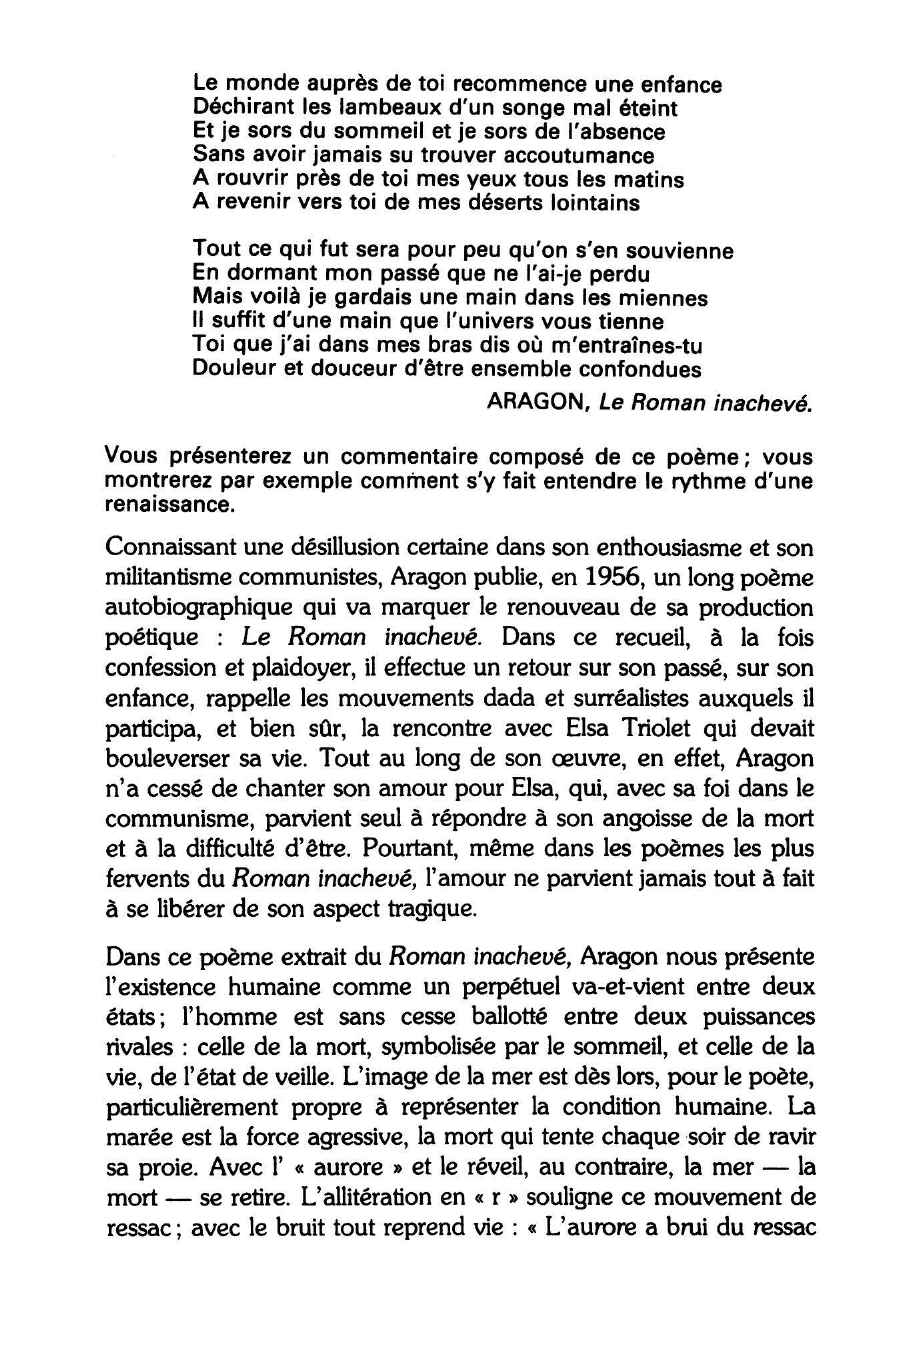 Prévisualisation du document ARAGON, Le Roman inachevé. Commentaire composé